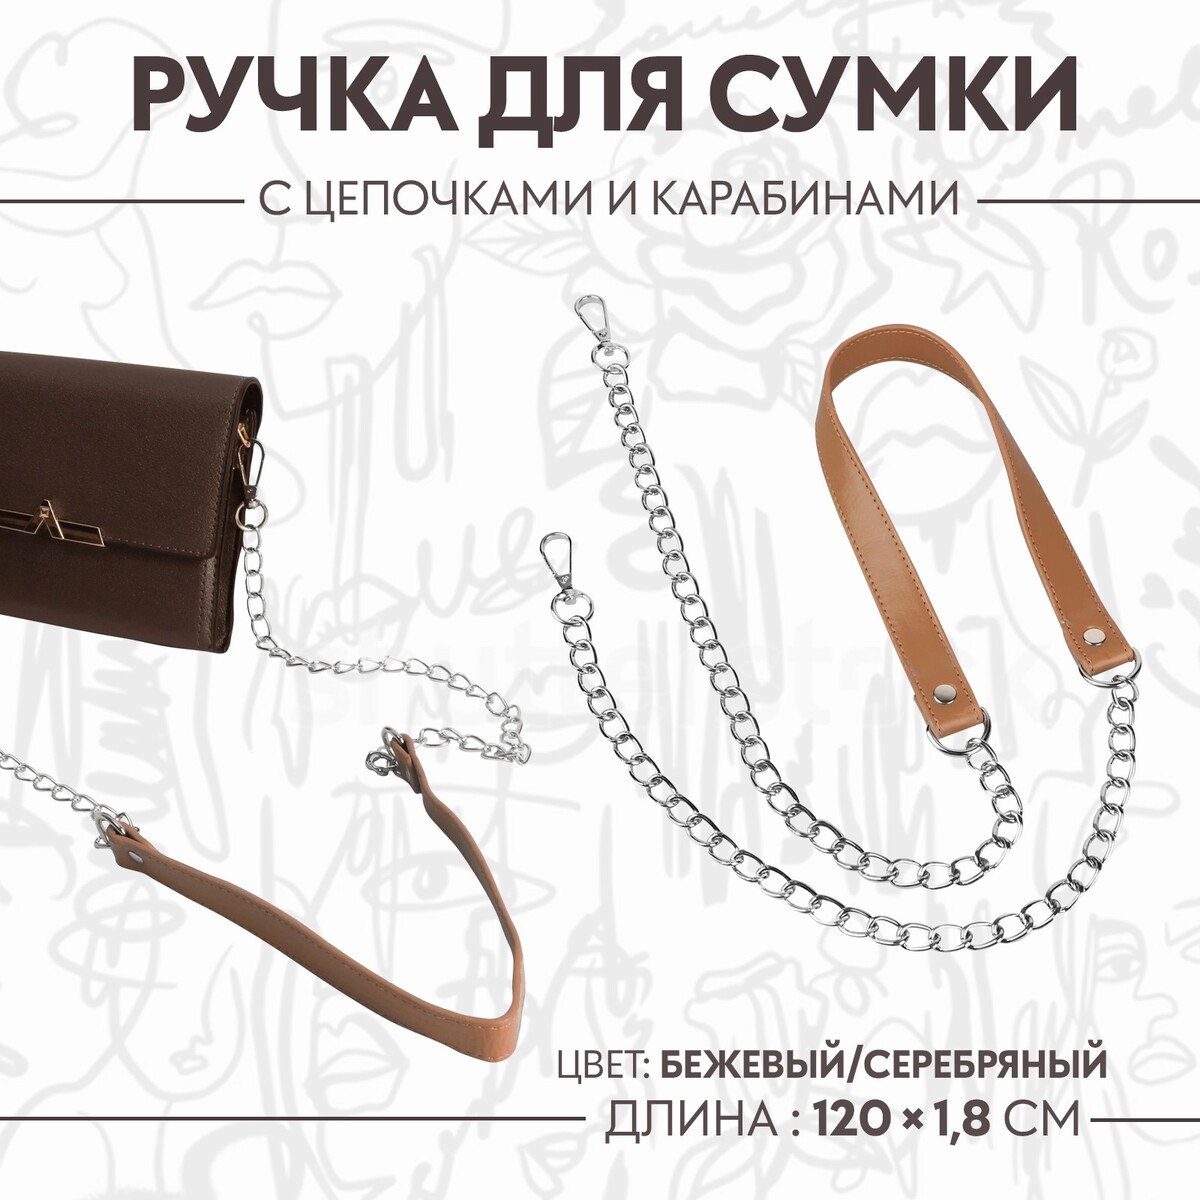 Ручка для сумки, с цепочками и карабинами, 120 × 1,8 см, цвет бежевый ручка для сумки с цепочками и карабинами 120 × 1 8 см